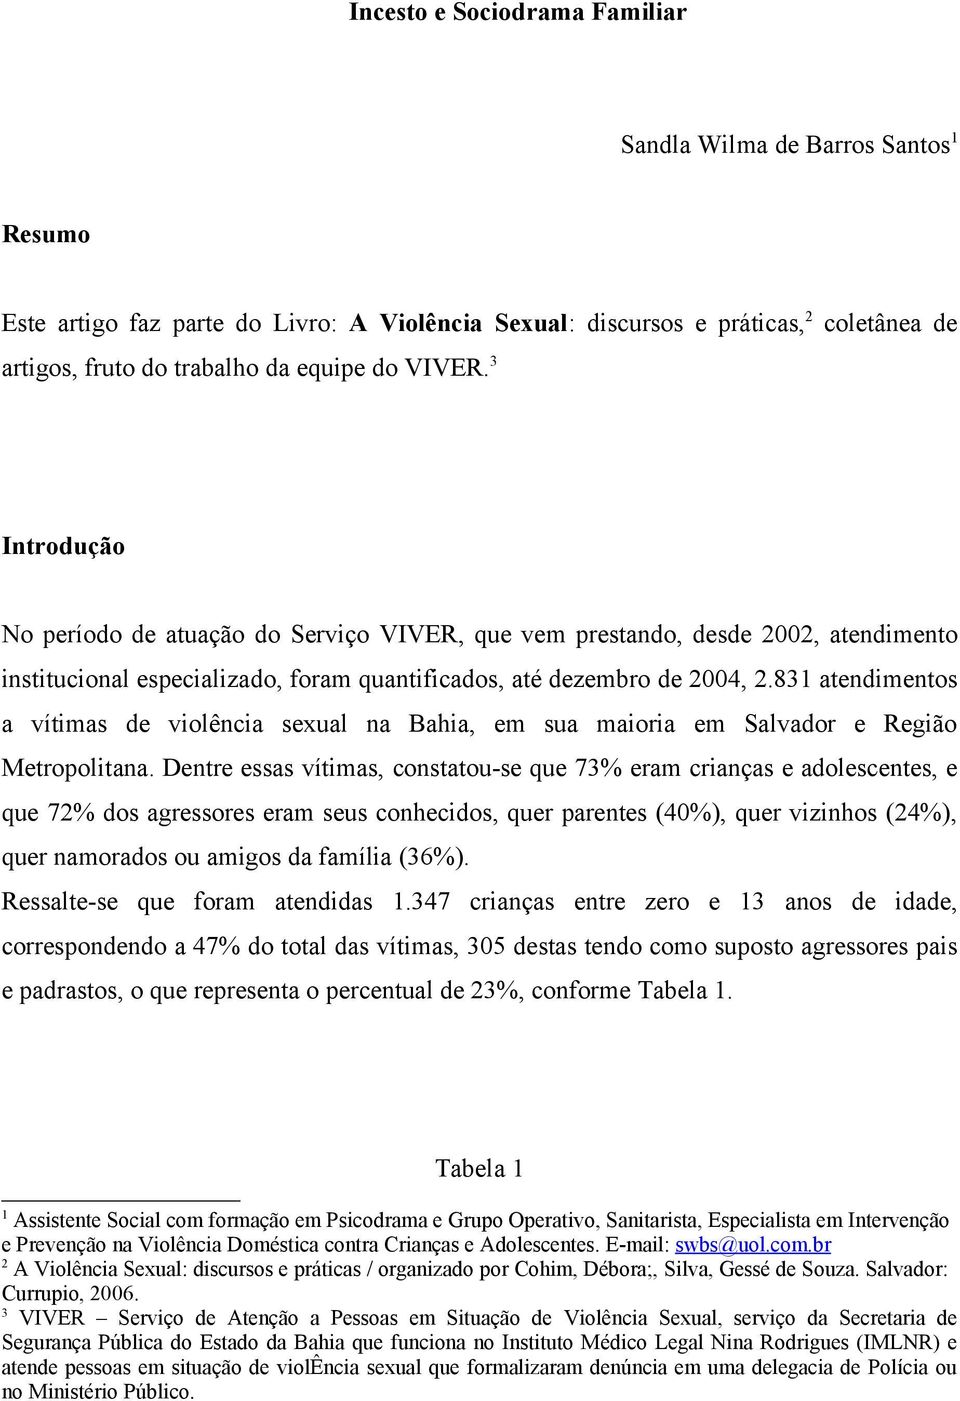 831 atendimentos a vítimas de violência sexual na Bahia, em sua maioria em Salvador e Região Metropolitana.